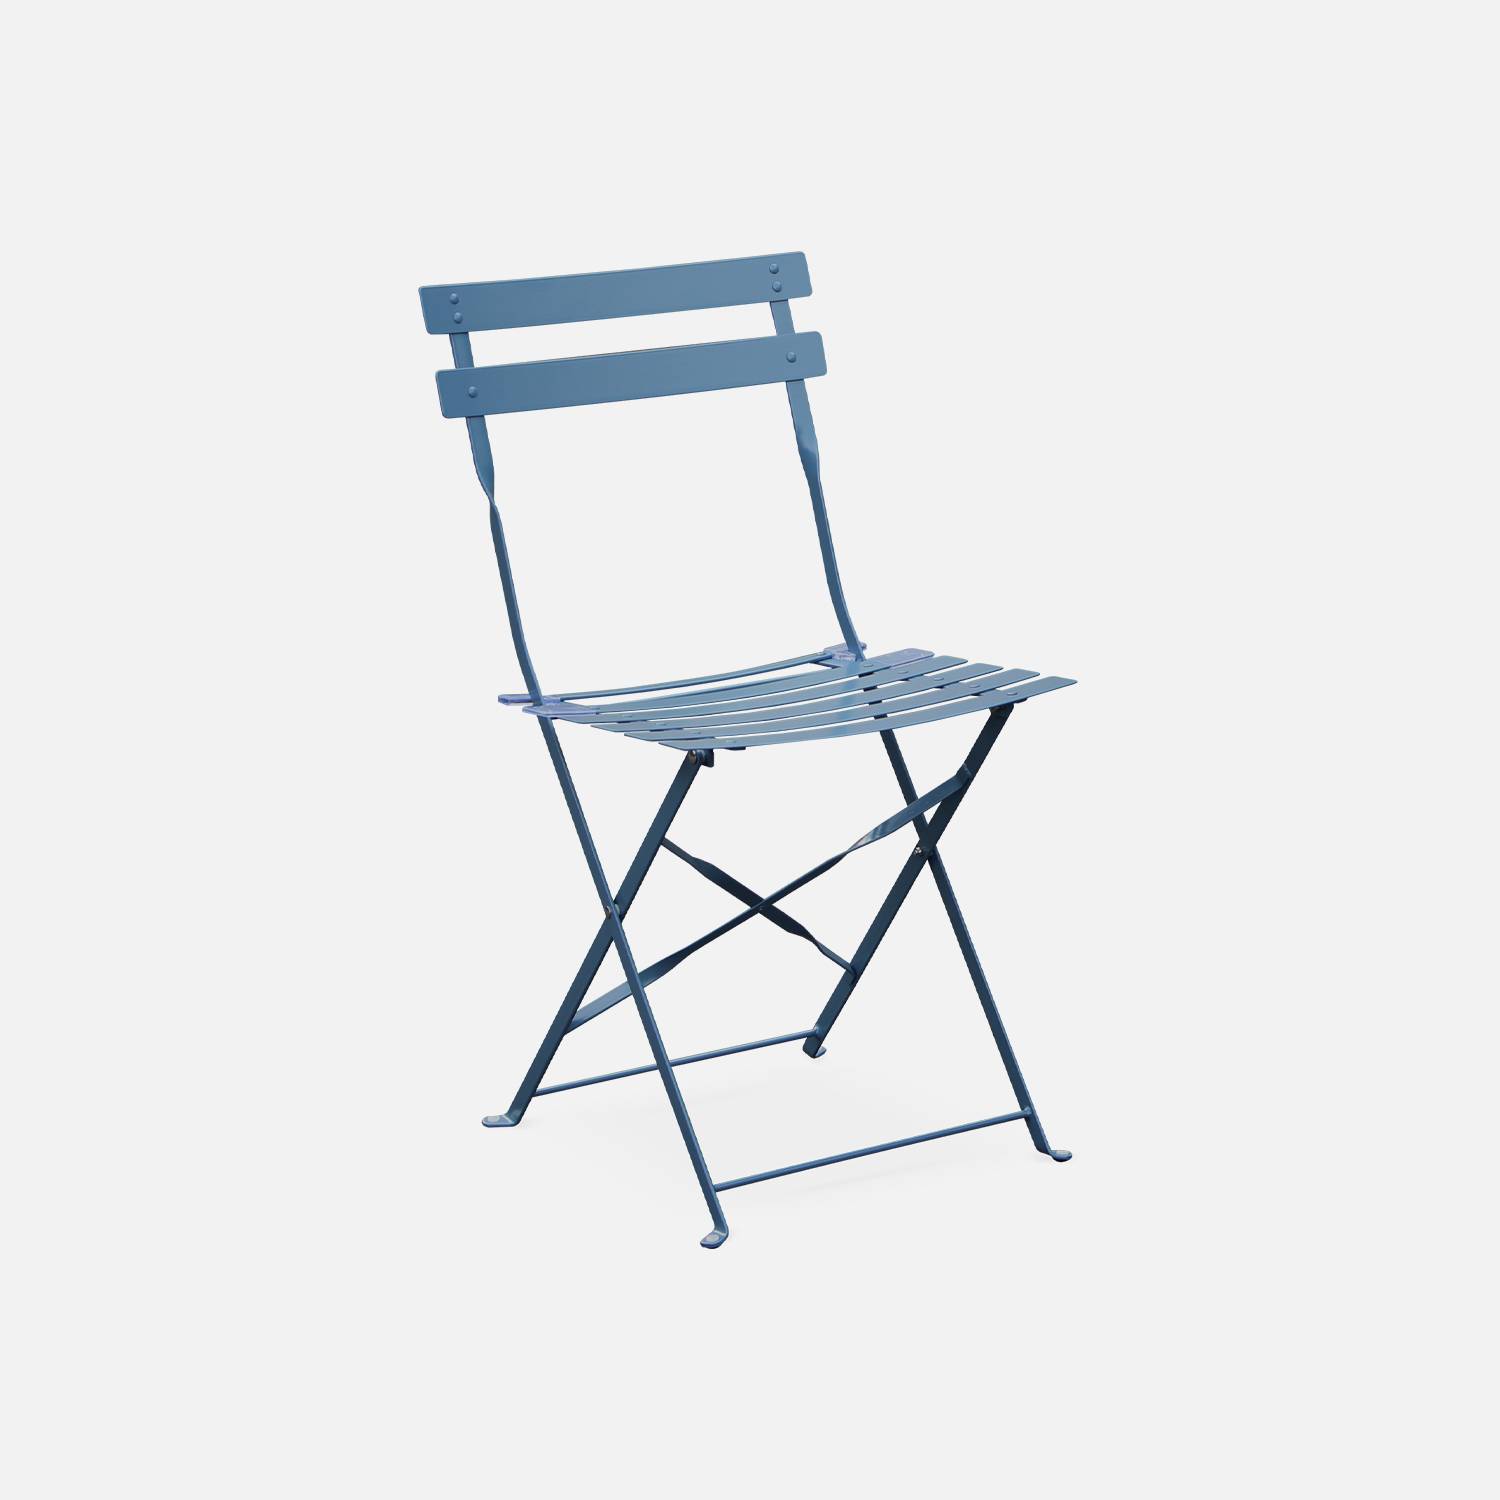 Emilia - Bistro set van rechthoekige tafel en 4 inklapbare stoelen - Staal met poedercoating - Mat Photo4